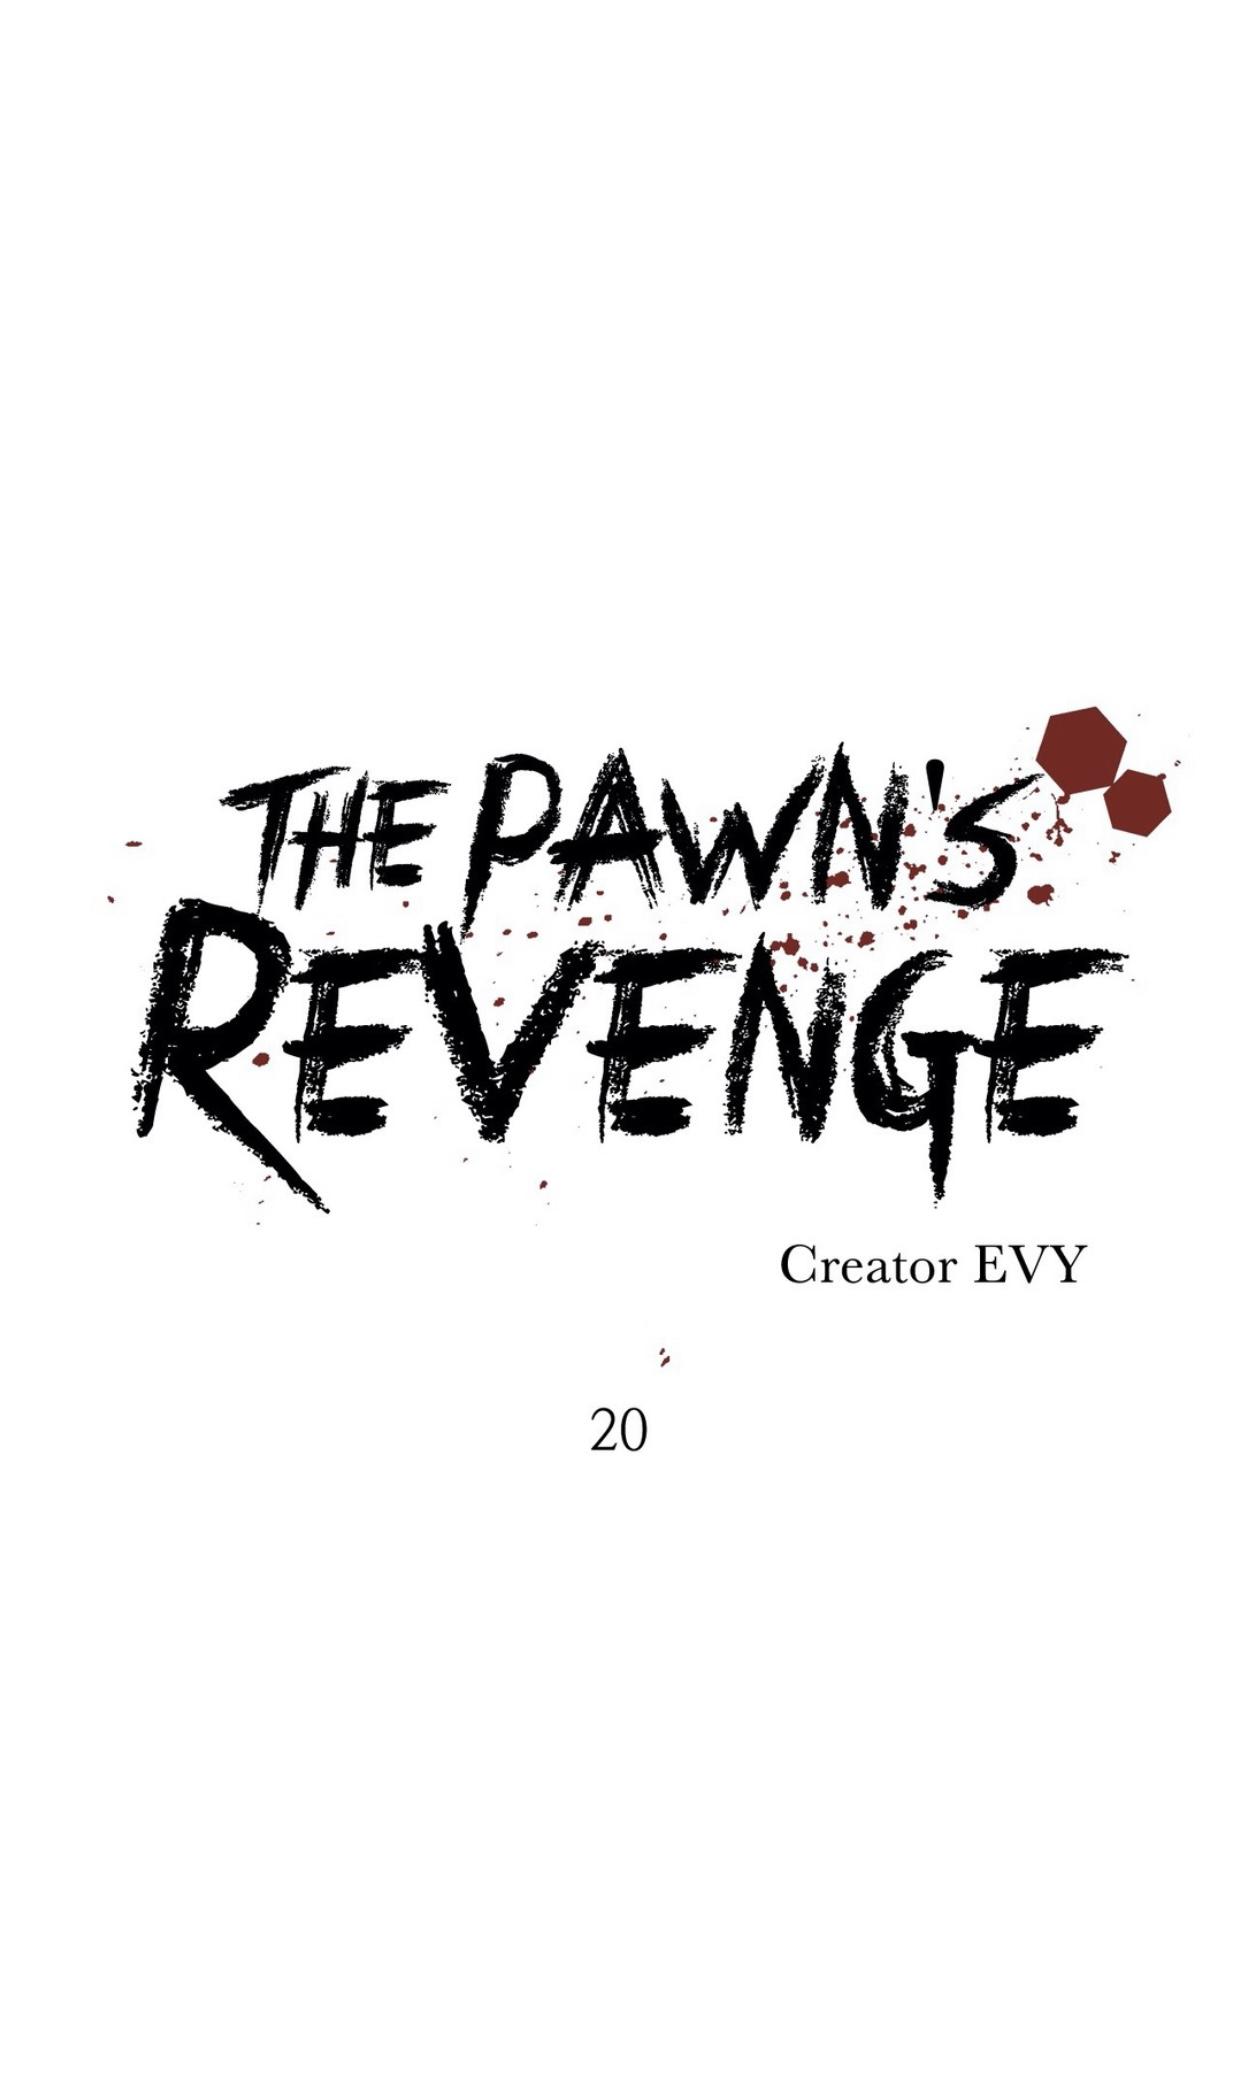 Pawn's Revenge 